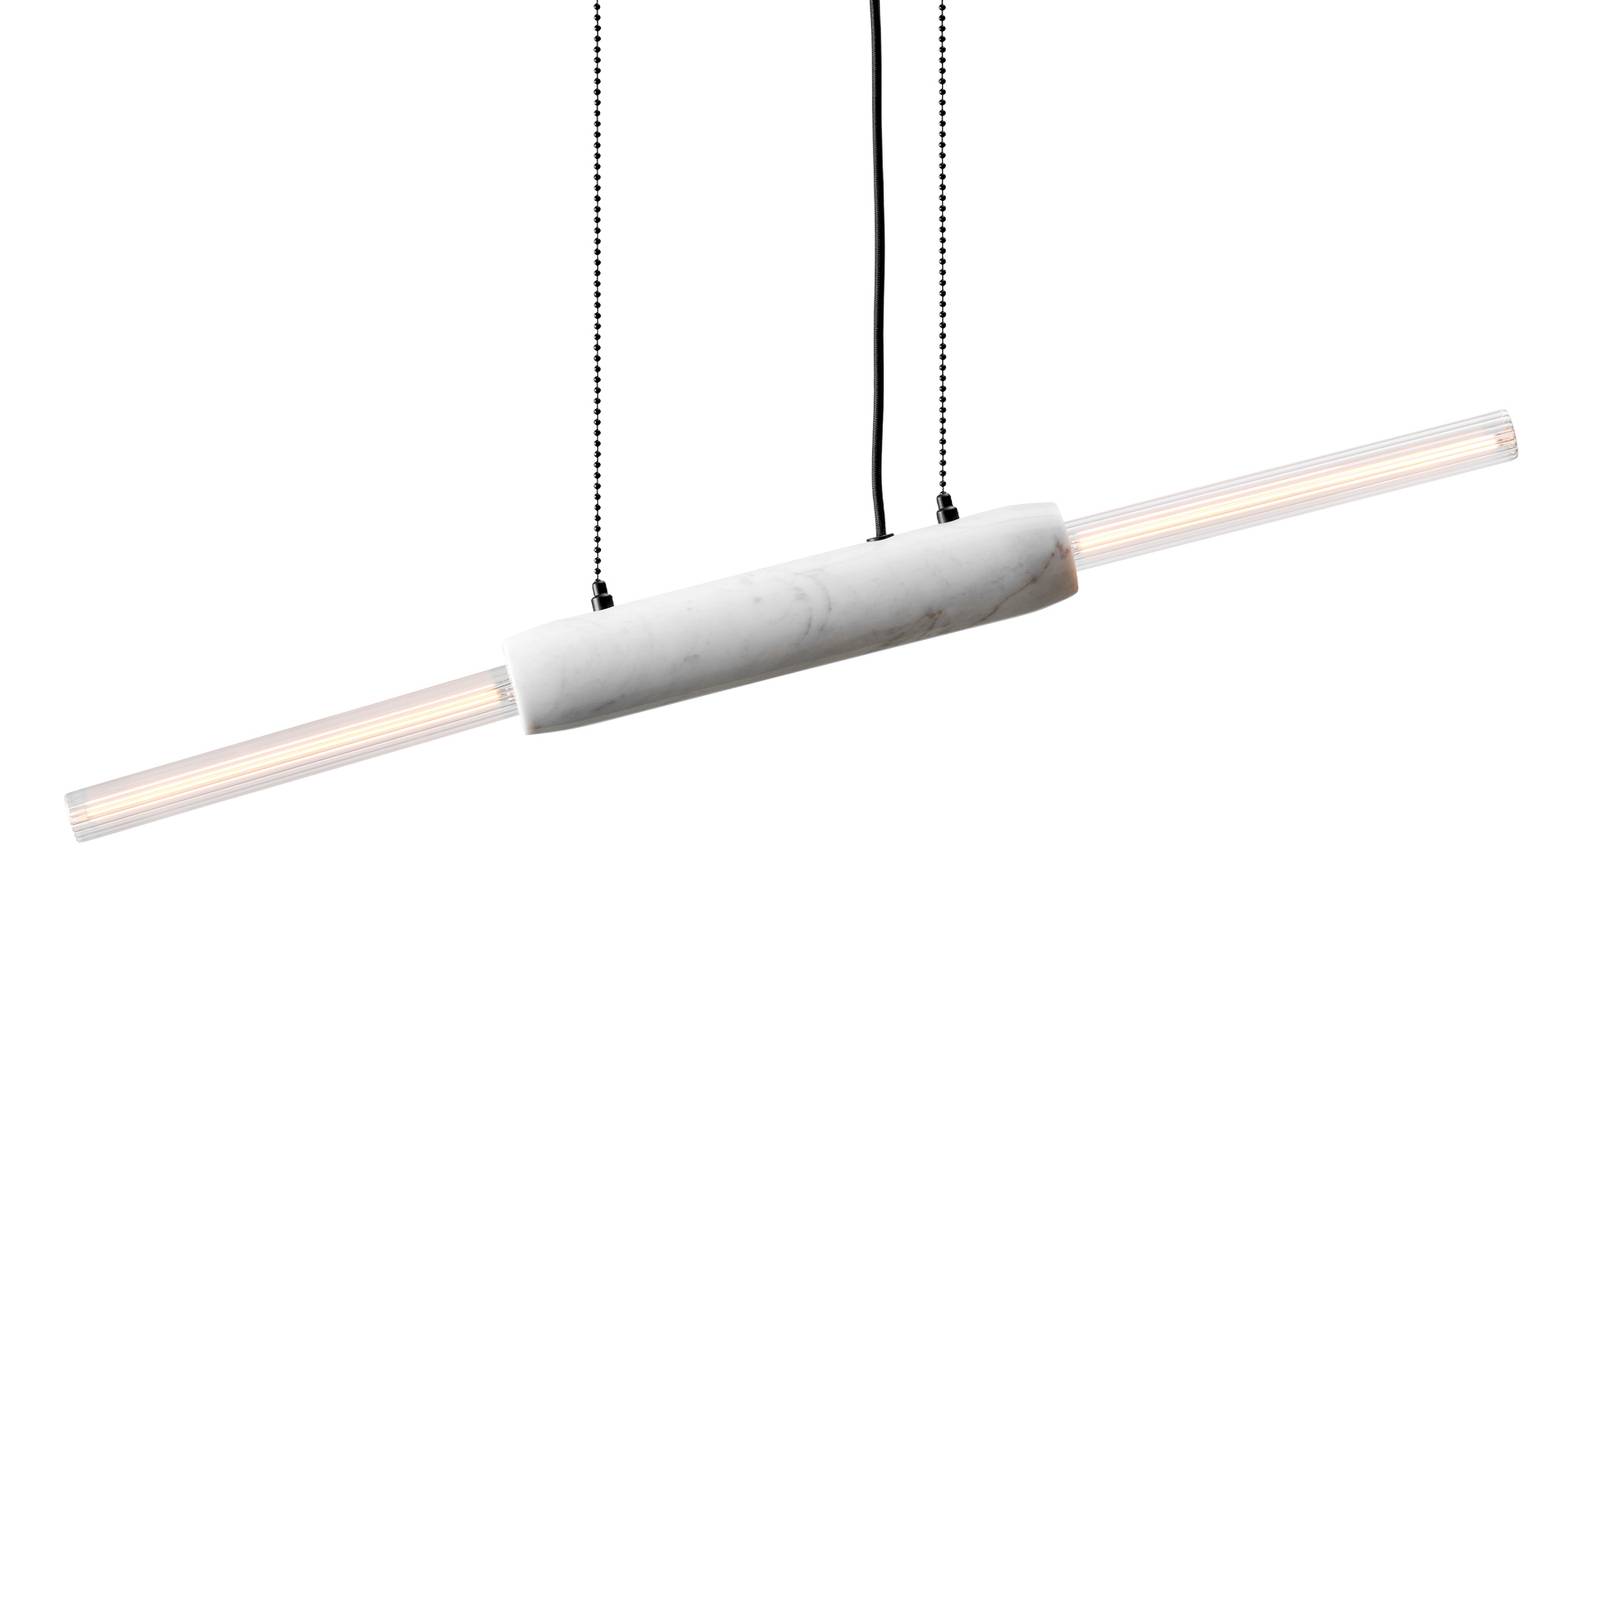 Image of DESIGN BY US Lampada a sospensione Limbo, marmo, bianco, a 2 luci, regolabile in altezza